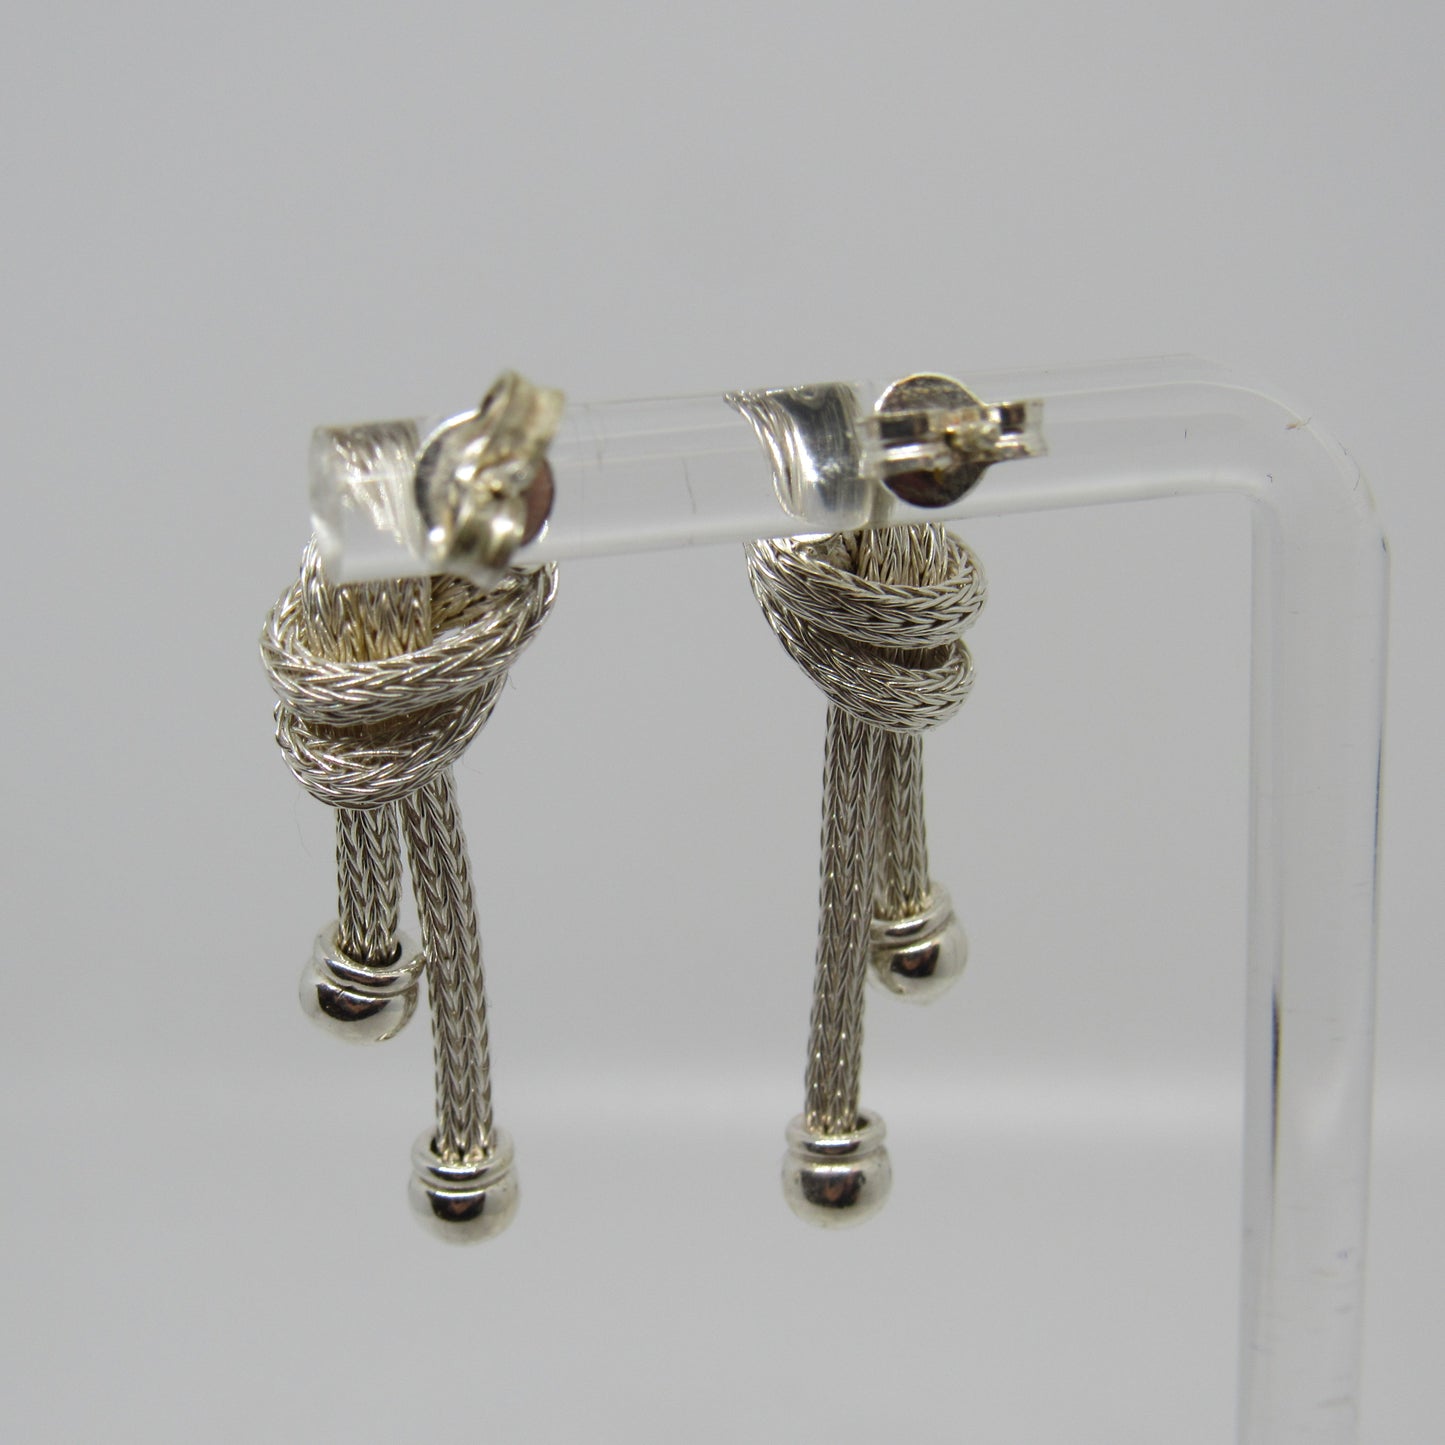 Italian Sterling Silver Top Knot Necklace w/ Matching Bracelet & Earrings - 16 in, 7 in, 1.25 in